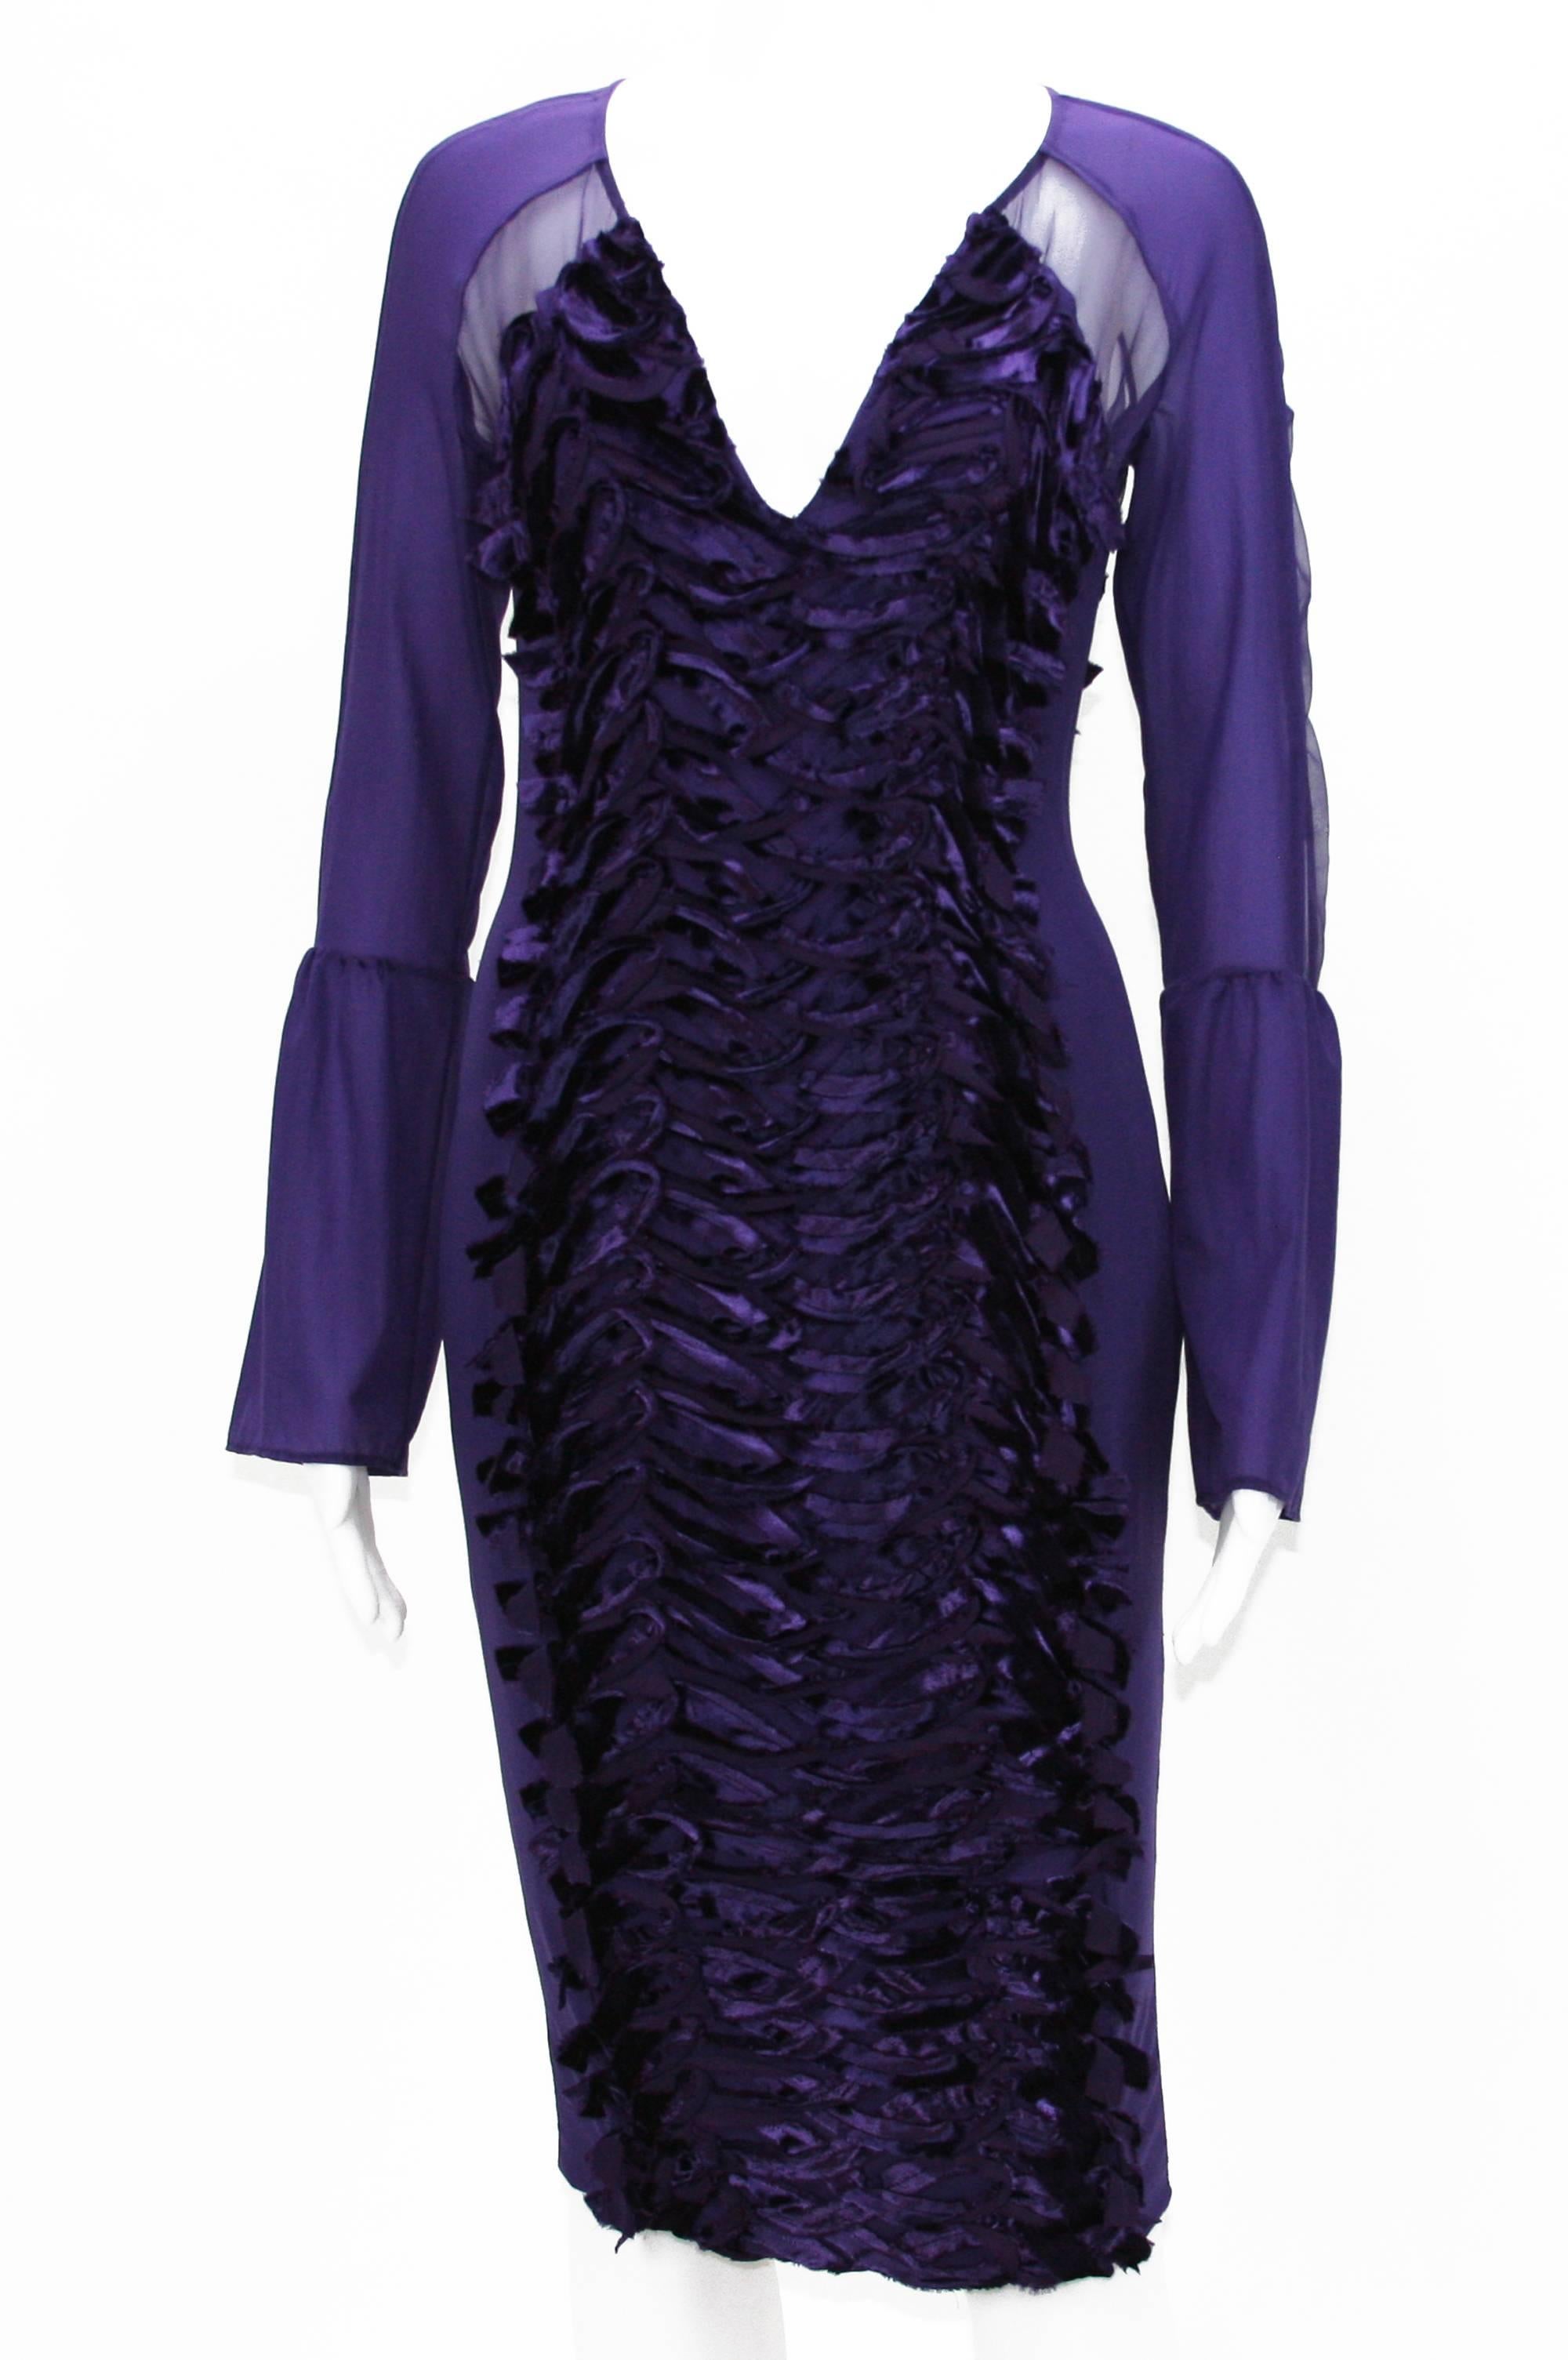 tom ford purple dress